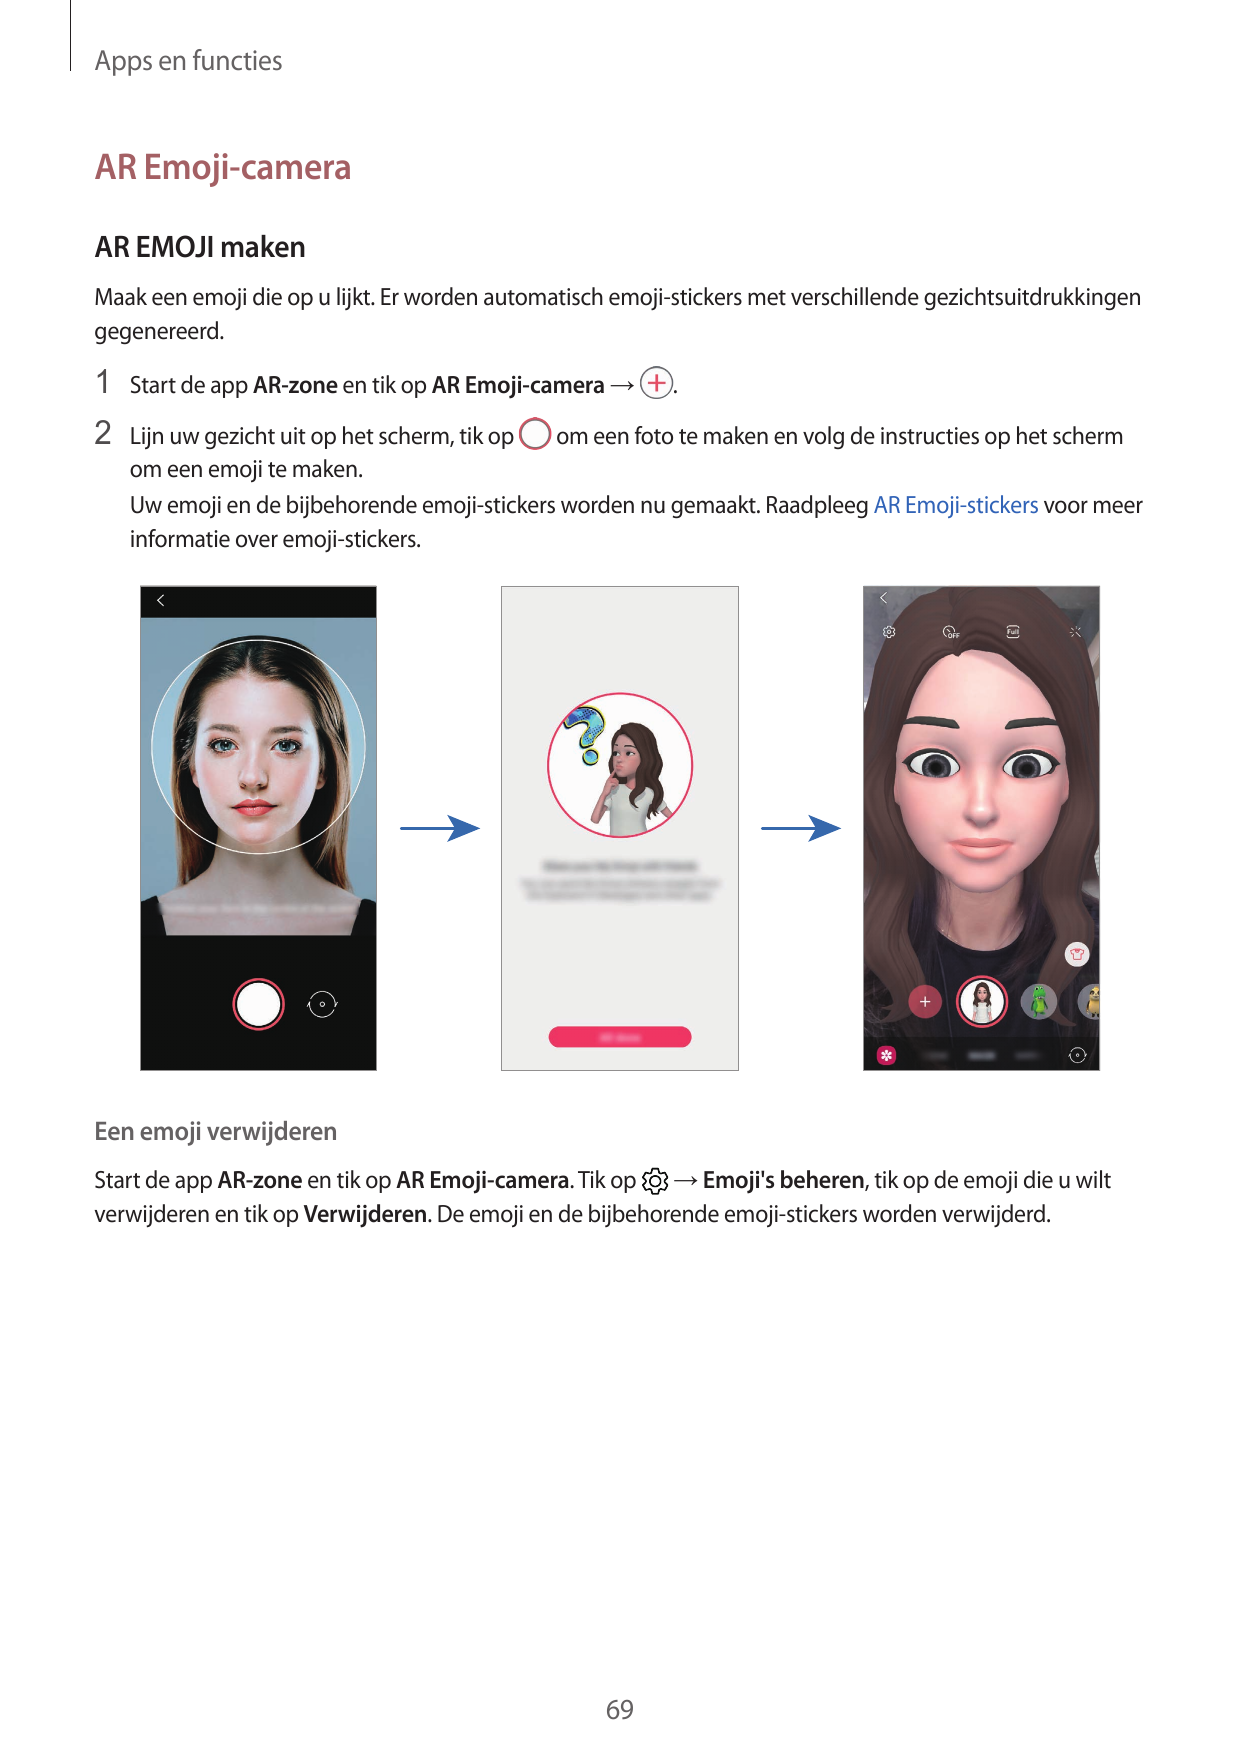 Apps en functiesAR Emoji-cameraAR EMOJI makenMaak een emoji die op u lijkt. Er worden automatisch emoji-stickers met verschillen